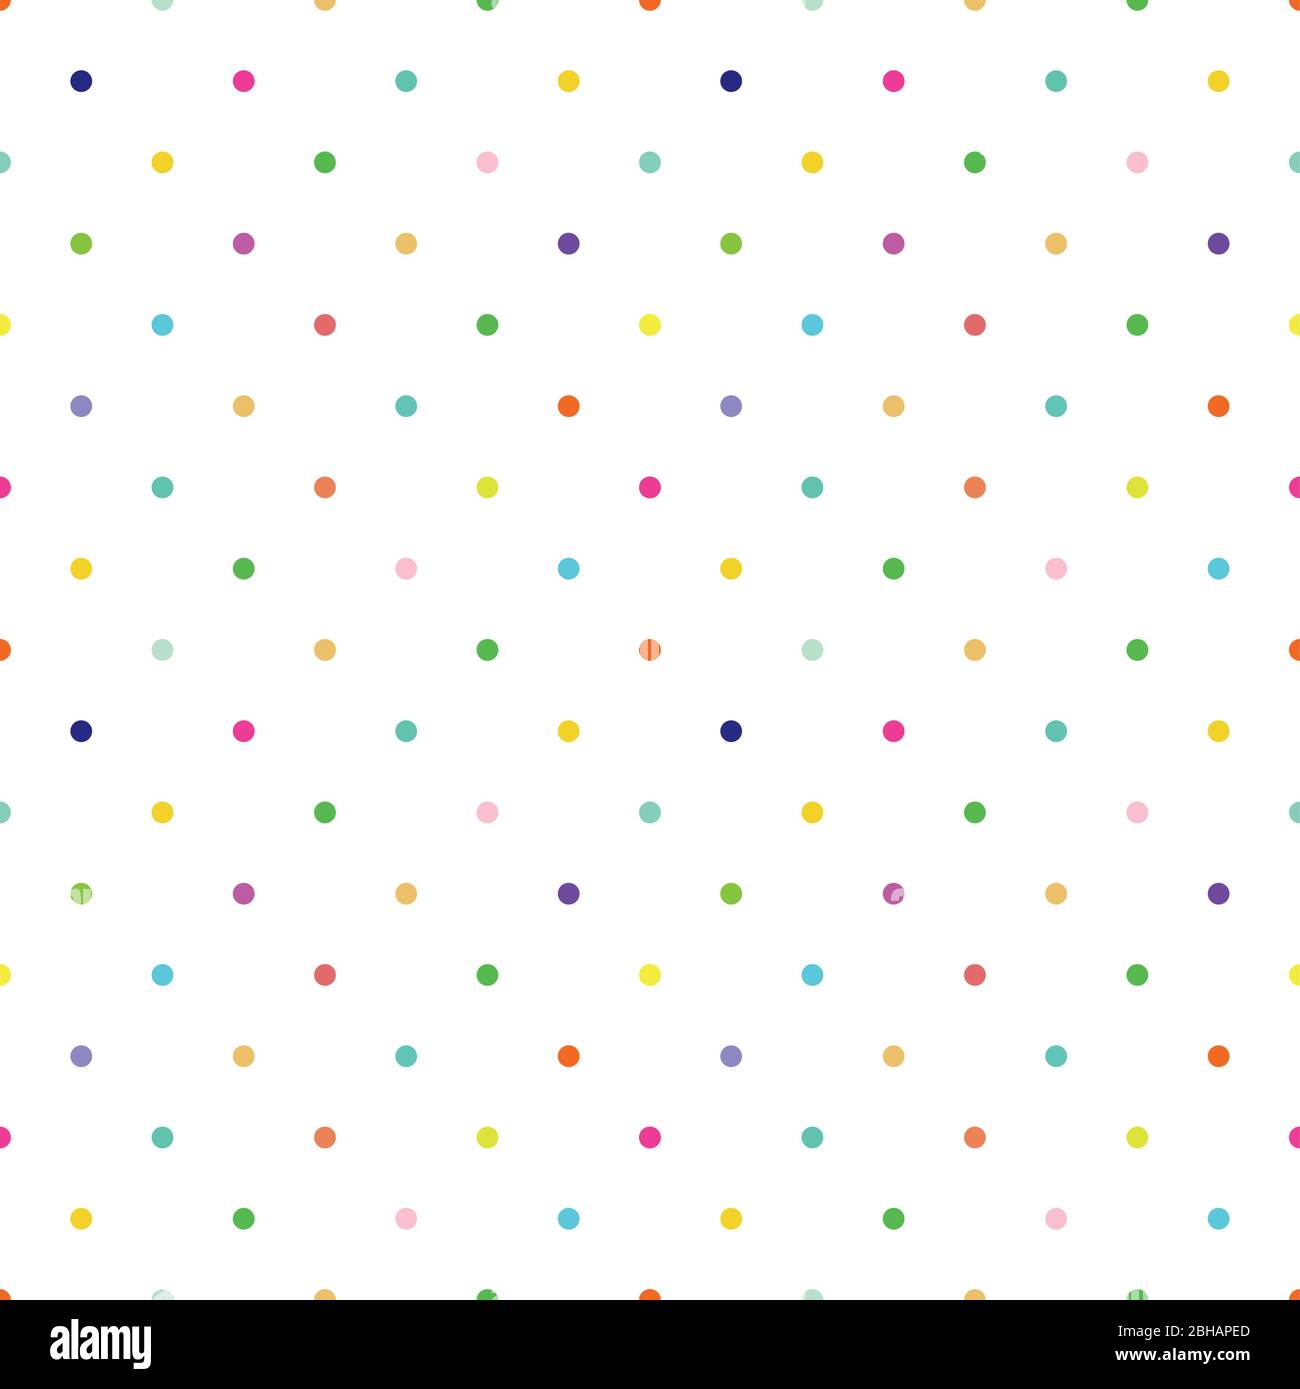 Ditsy vector polka dot seamless pattern background. Small circles